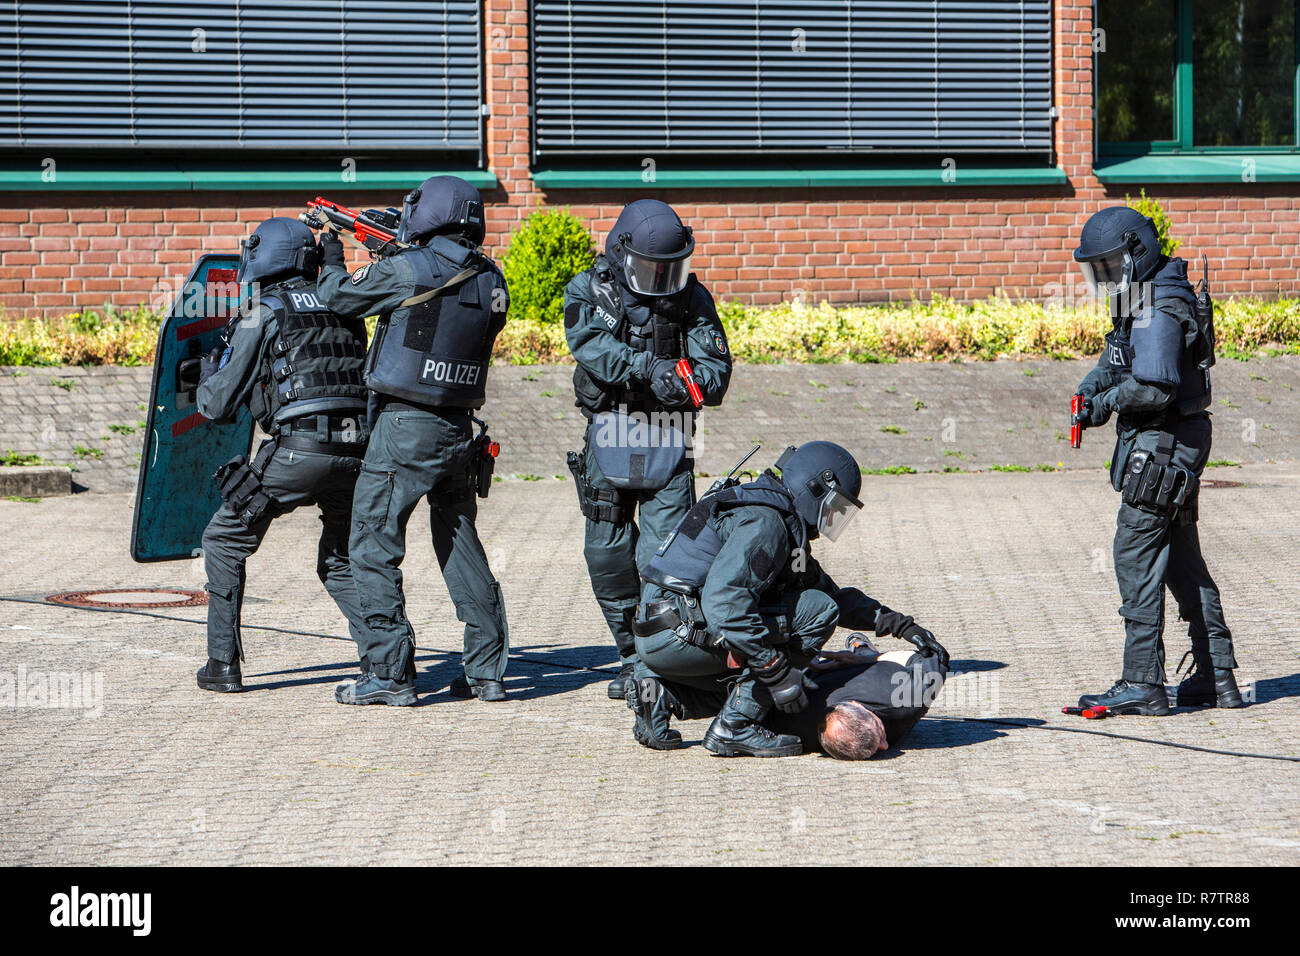 Spezialeinsatzkommandos, SEK, la speciale unità di risposta dello Stato tedesco le forze di polizia, utilizzando armi non in grado di Foto Stock